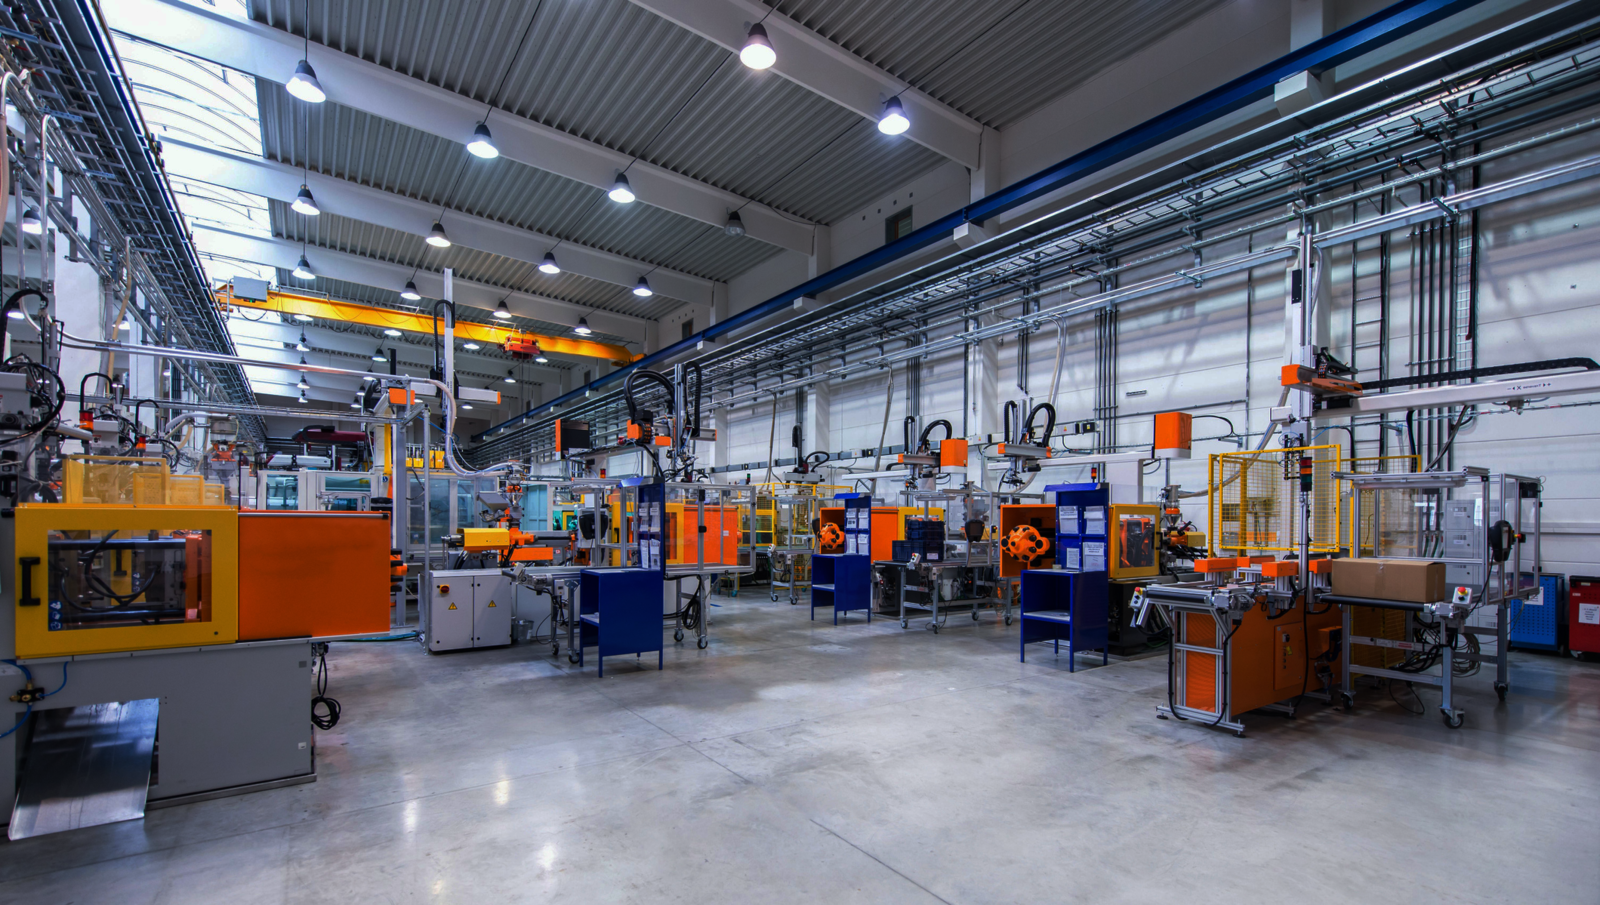 moderna fábrica com robôs e máquinas de produção de peças e equipamentos plásticos industriais.